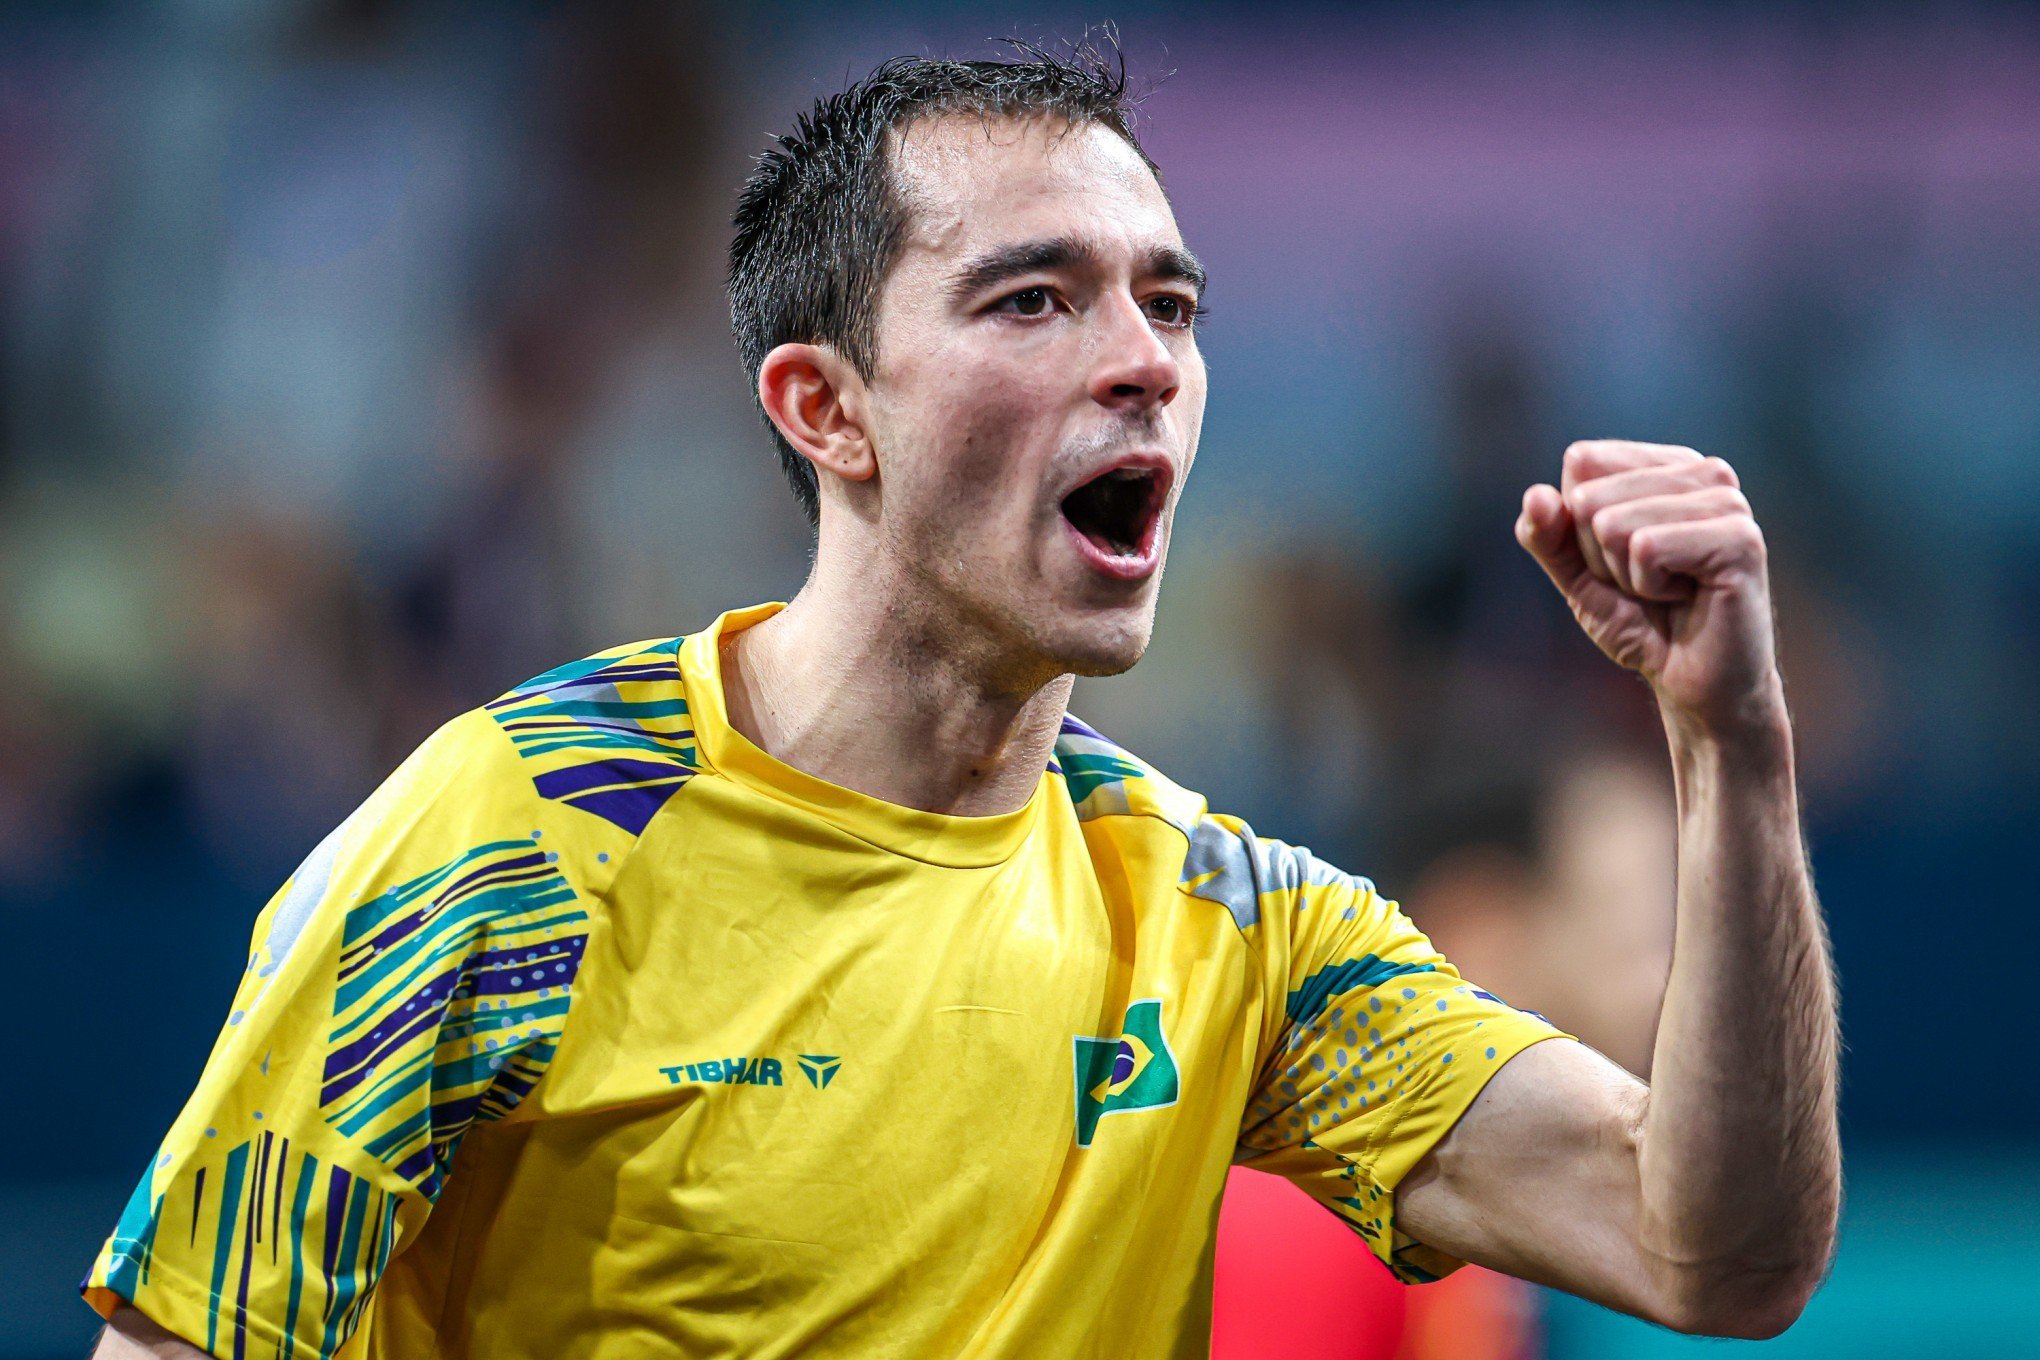 Vitória de Hugo Calderano garante 1ª semifinal do Brasil na história do tênis de mesa